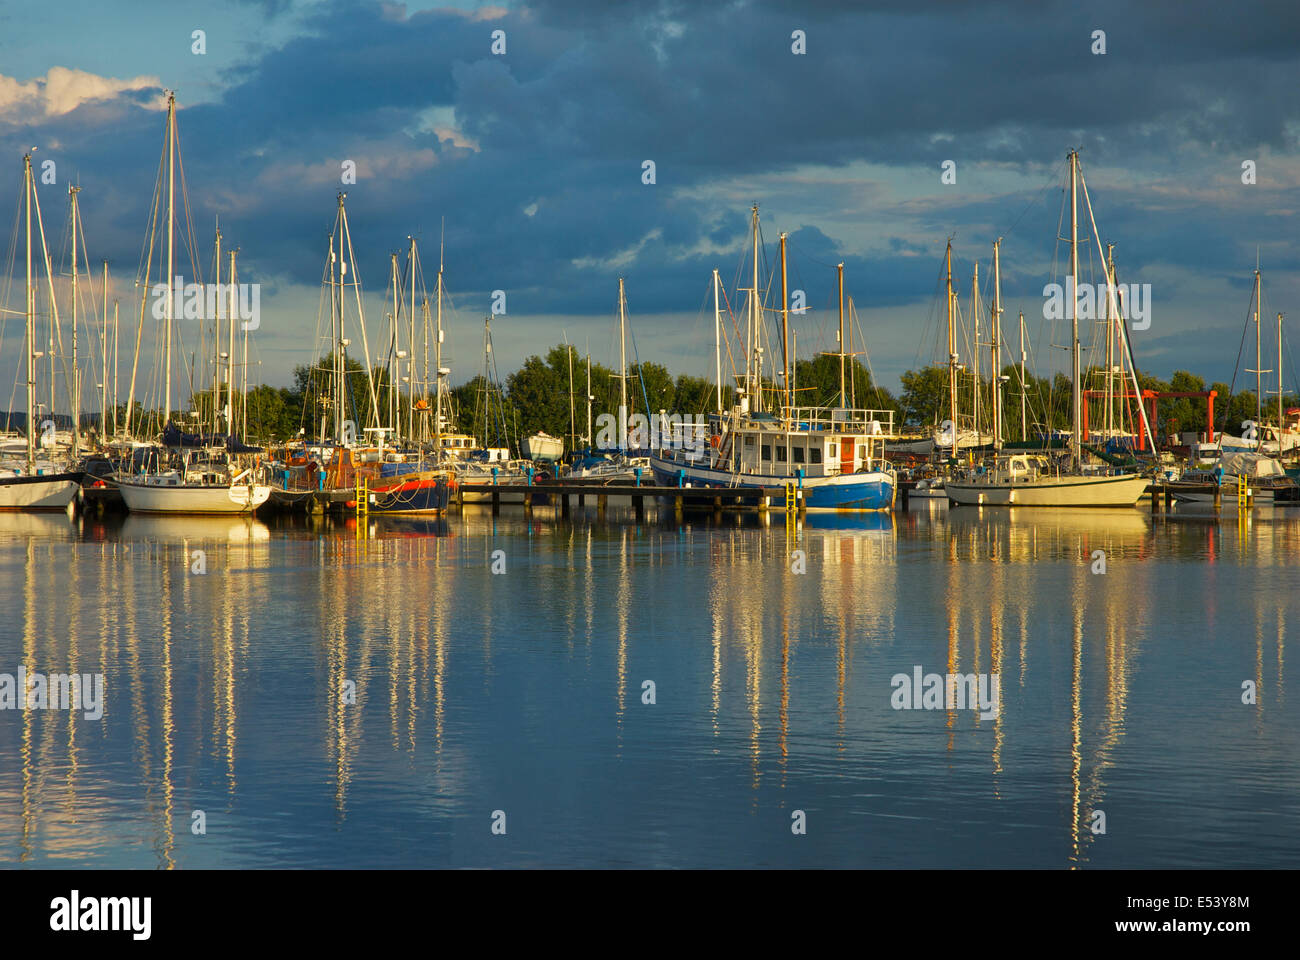 Barche a vela ormeggiata nel bacino del canale, Glasson Dock, Lancashire, Inghilterra, Regno Unito Foto Stock